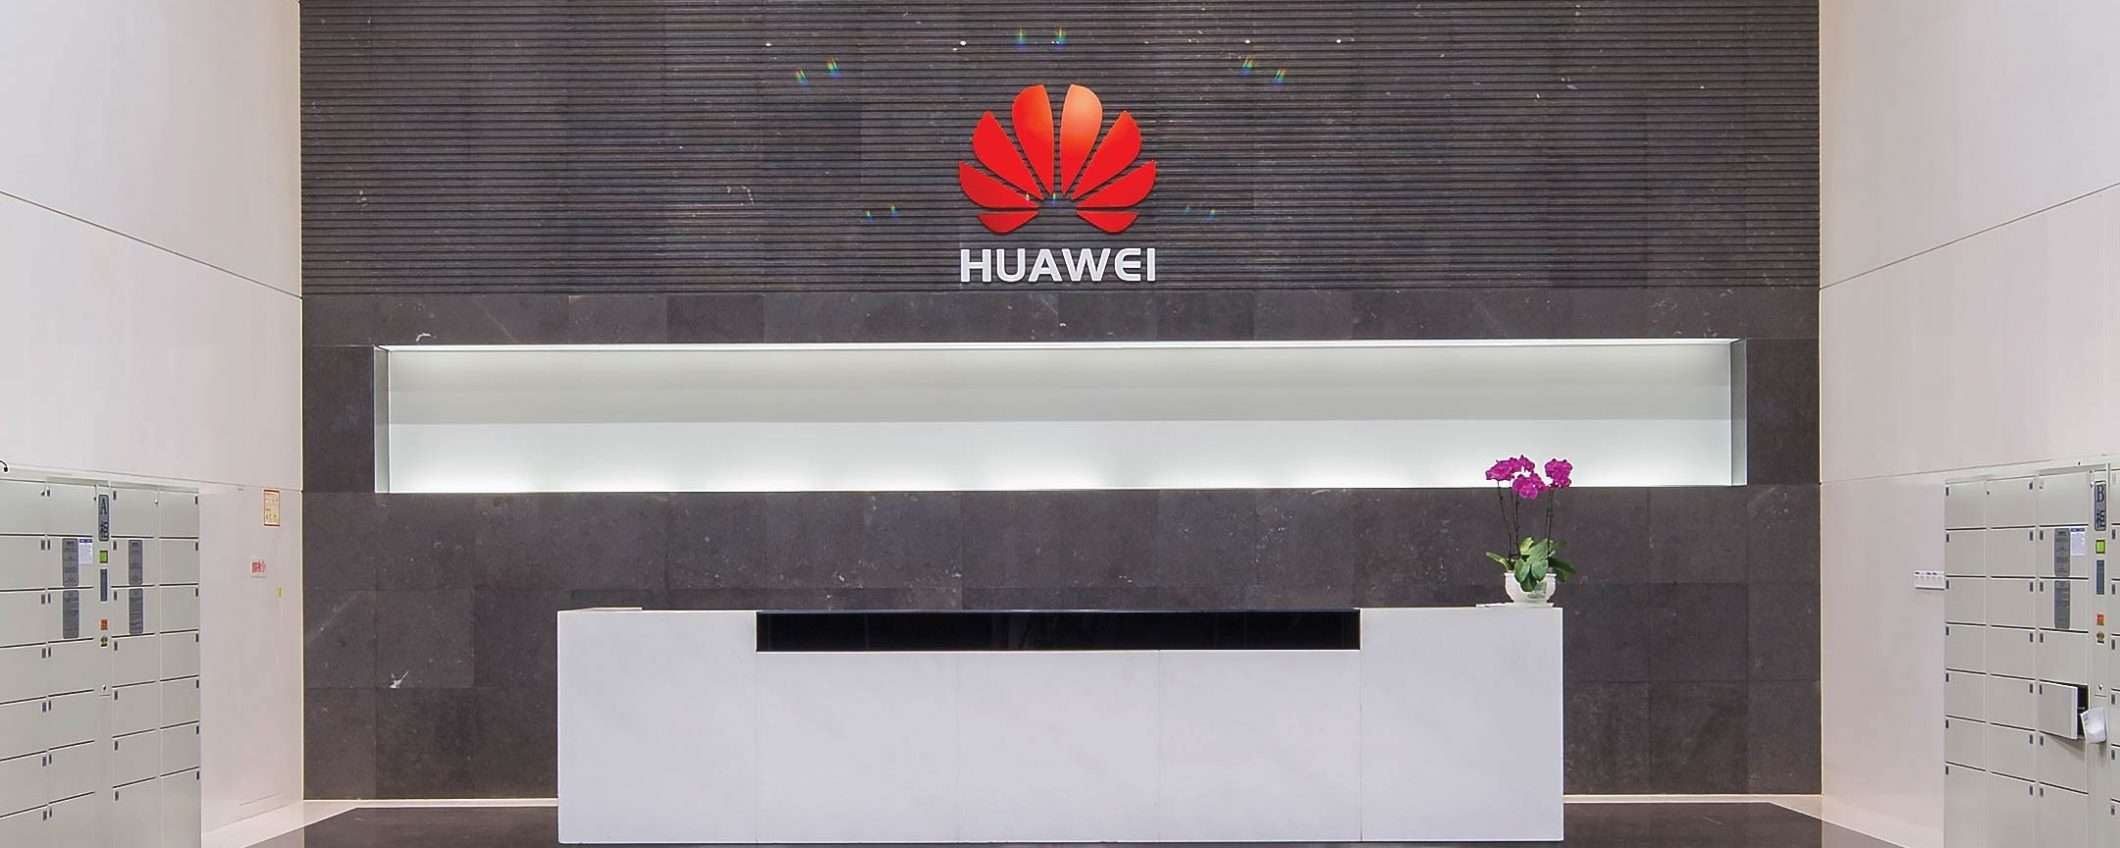 5G: infrastrutture Huawei al bando in Nuova Zelanda